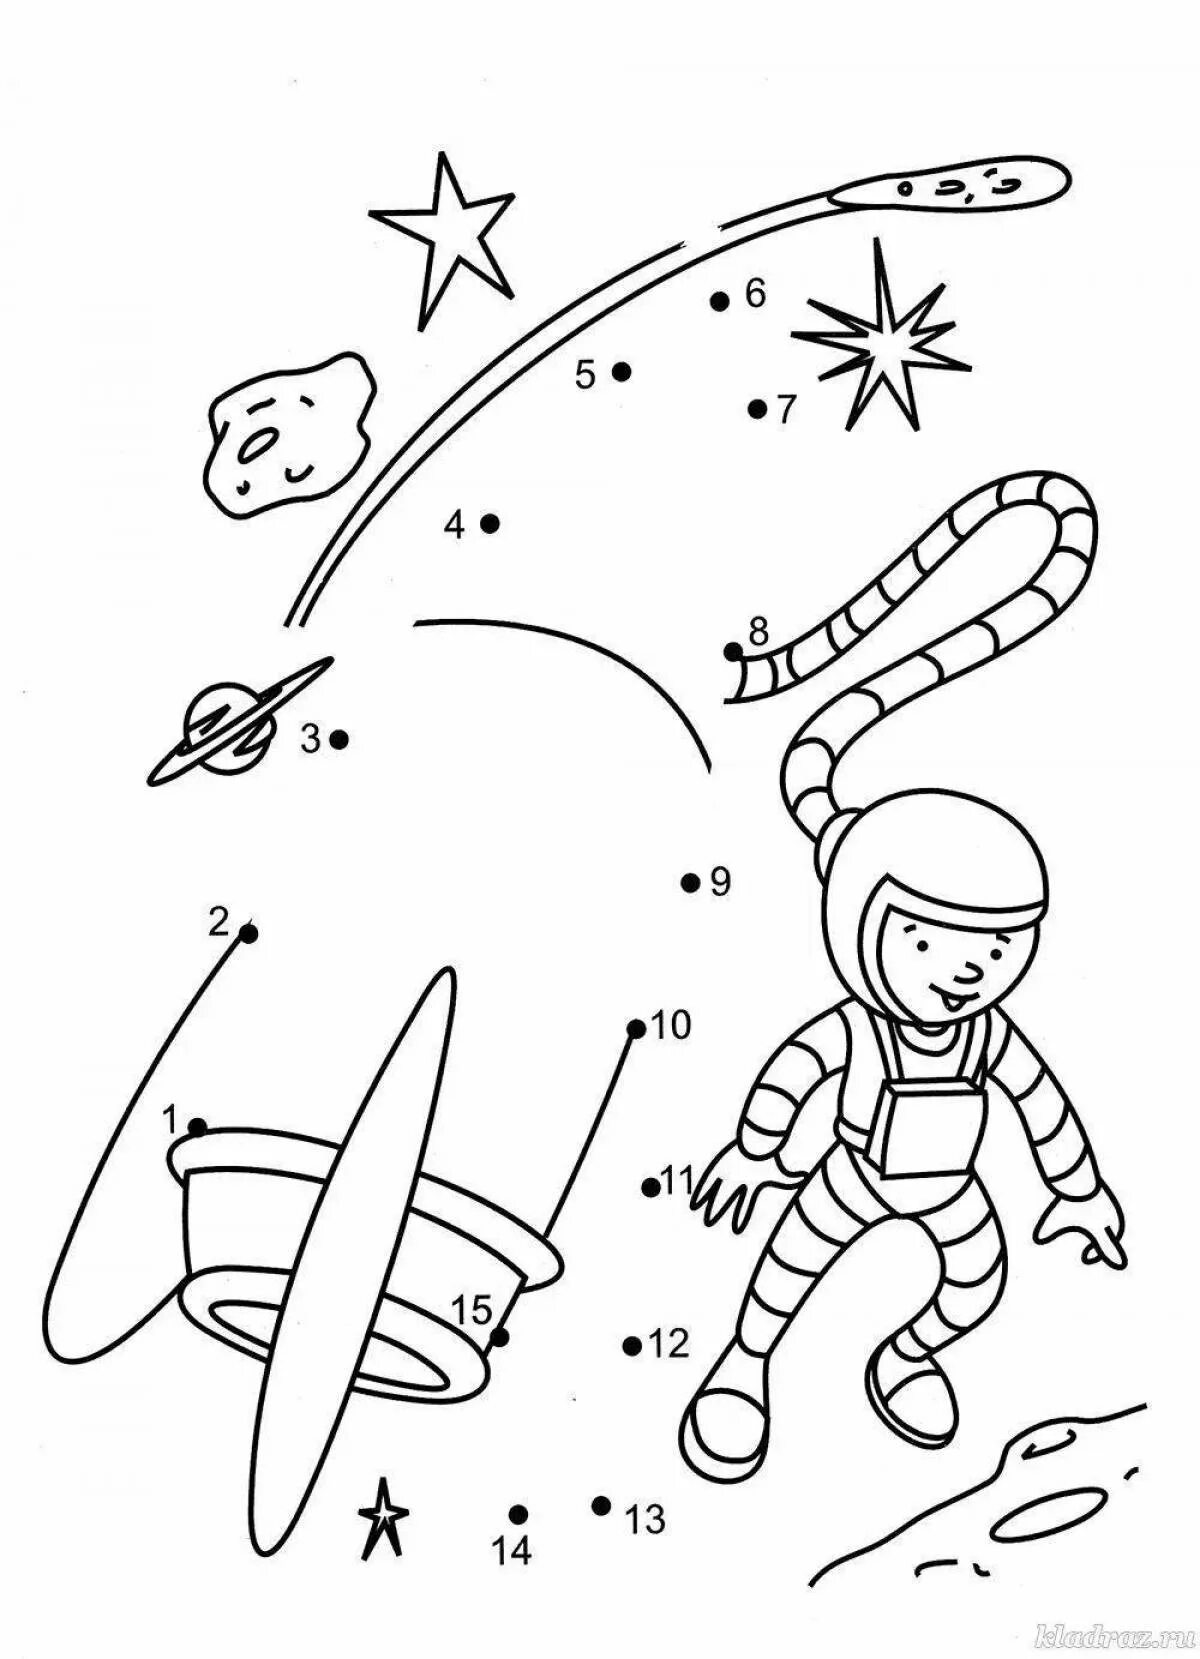 Игры для детей космос 6 лет. Космос раскраска для детей. Космонавтика задания для дошкольников. Космос задания для детей. Космос задания для дошкольников.